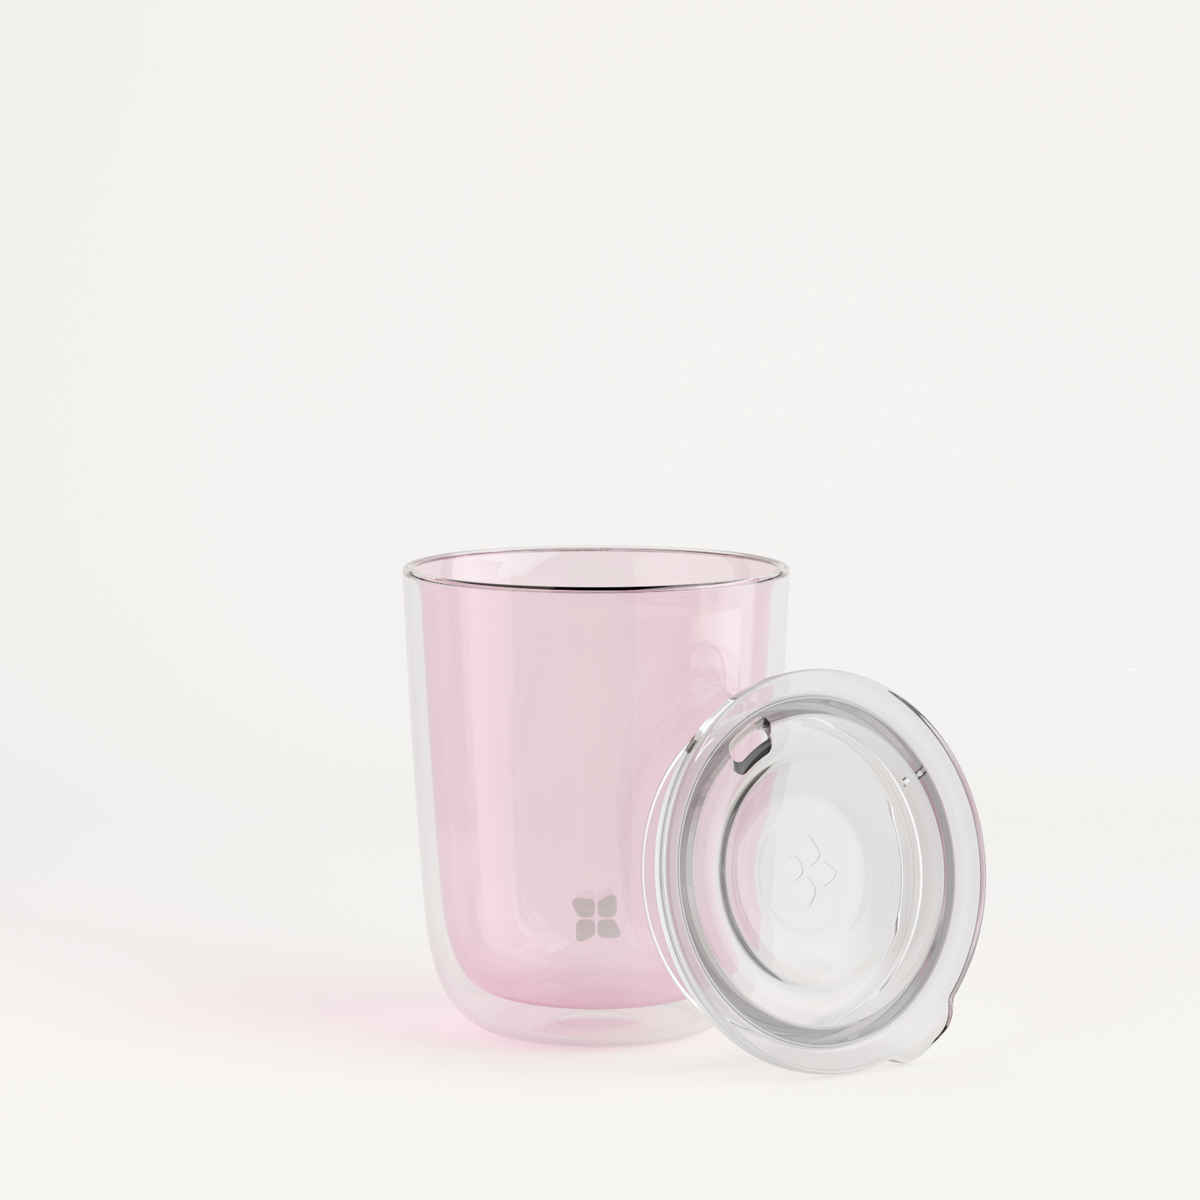 Clear Glass Mugs, 18 oz. 2 Pcs